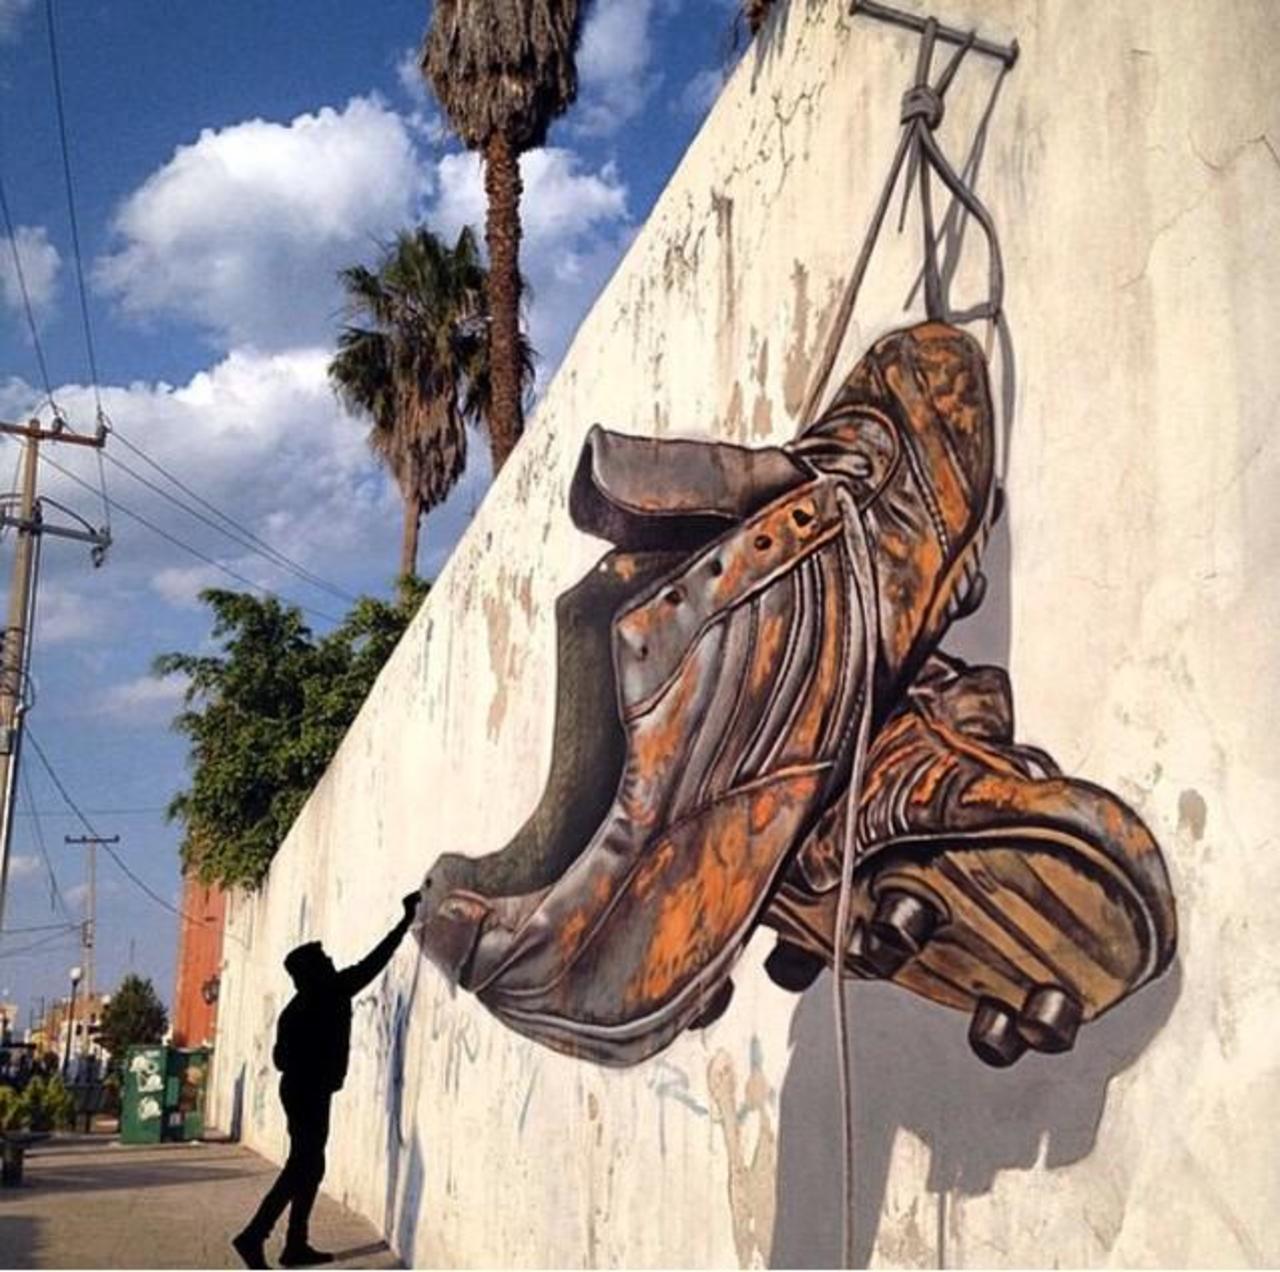 Awesome anamorphic 3D Street Art by Juandres Vera 

#art #graffiti #mural #streetart http://t.co/hJAgK6Dv2K